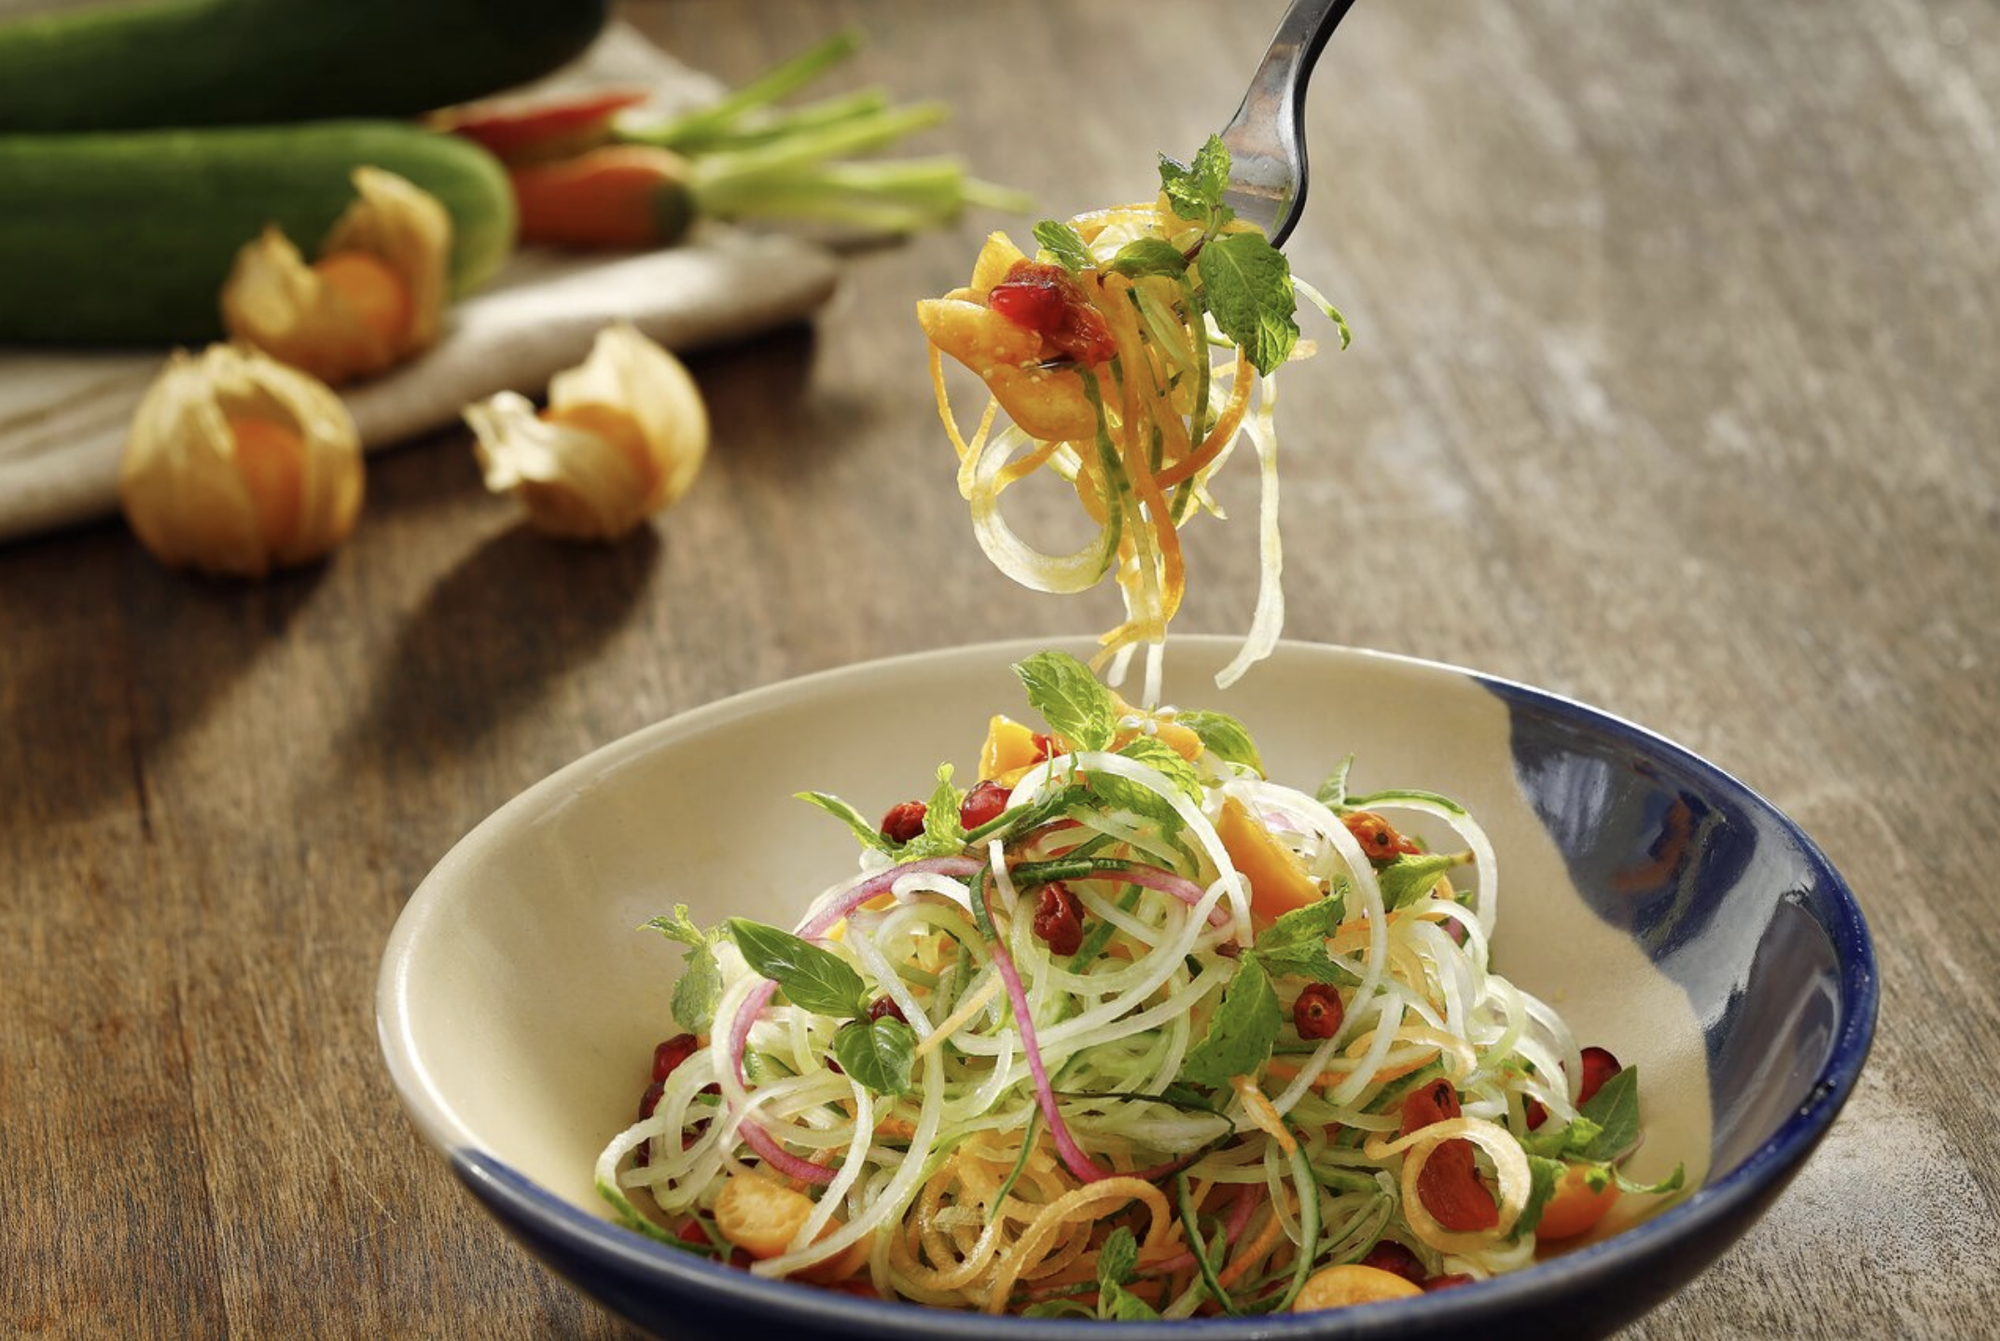 Nhà hàng Việt Nam duy nhất lọt top những nhà hàng chay ngon nhất thế giới 2023 - Ảnh 1.